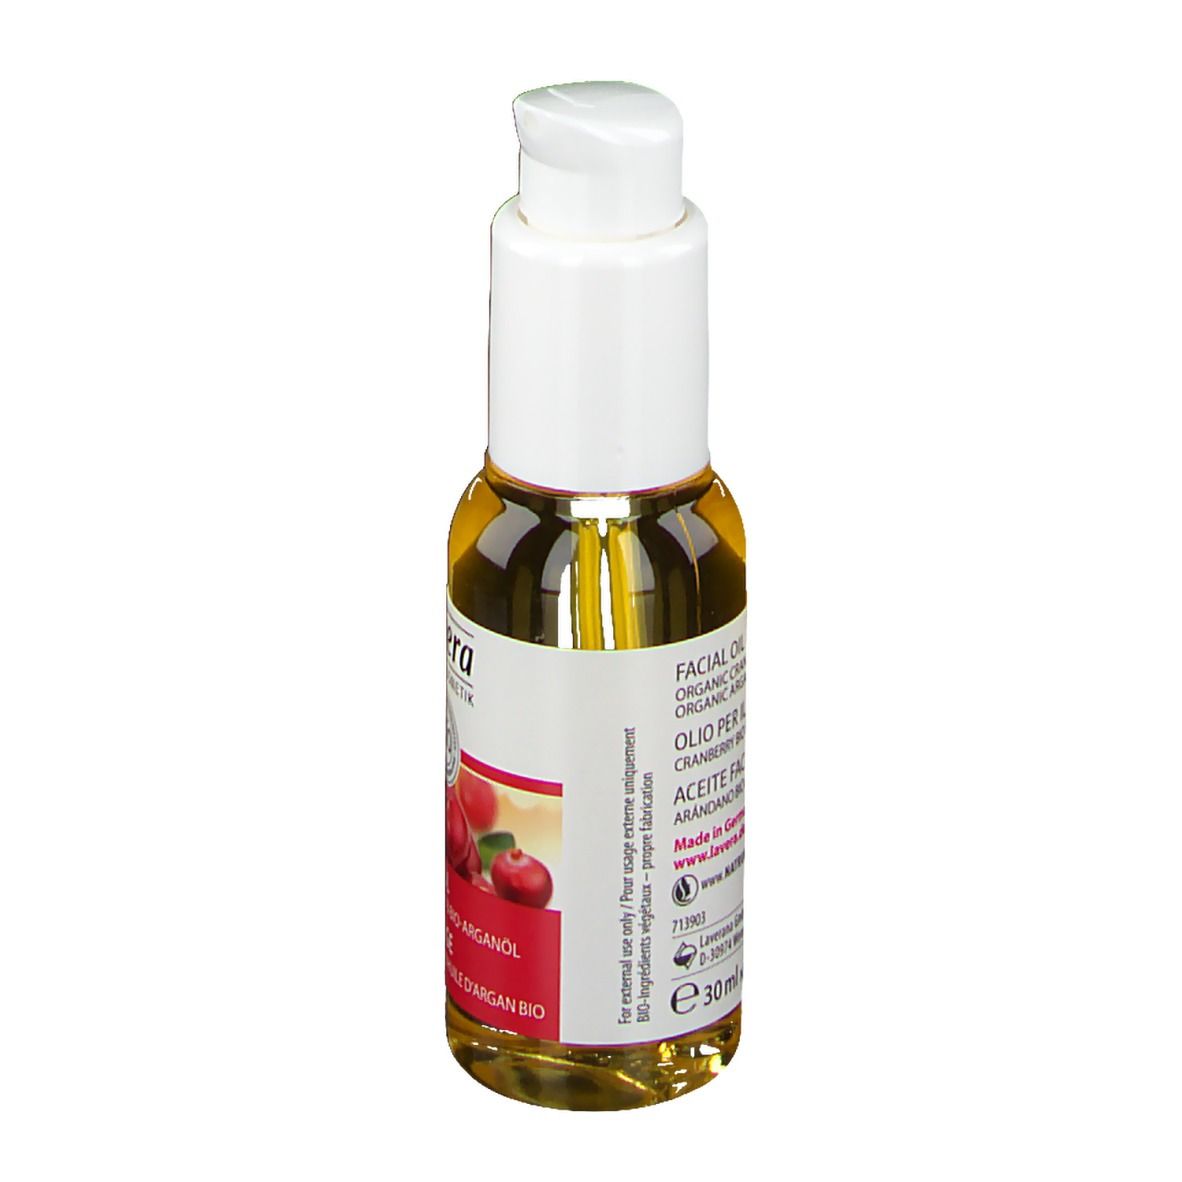 lavera Regenerierendes Gesichtsöl Bio-Cranberry & Bio-Arganöl